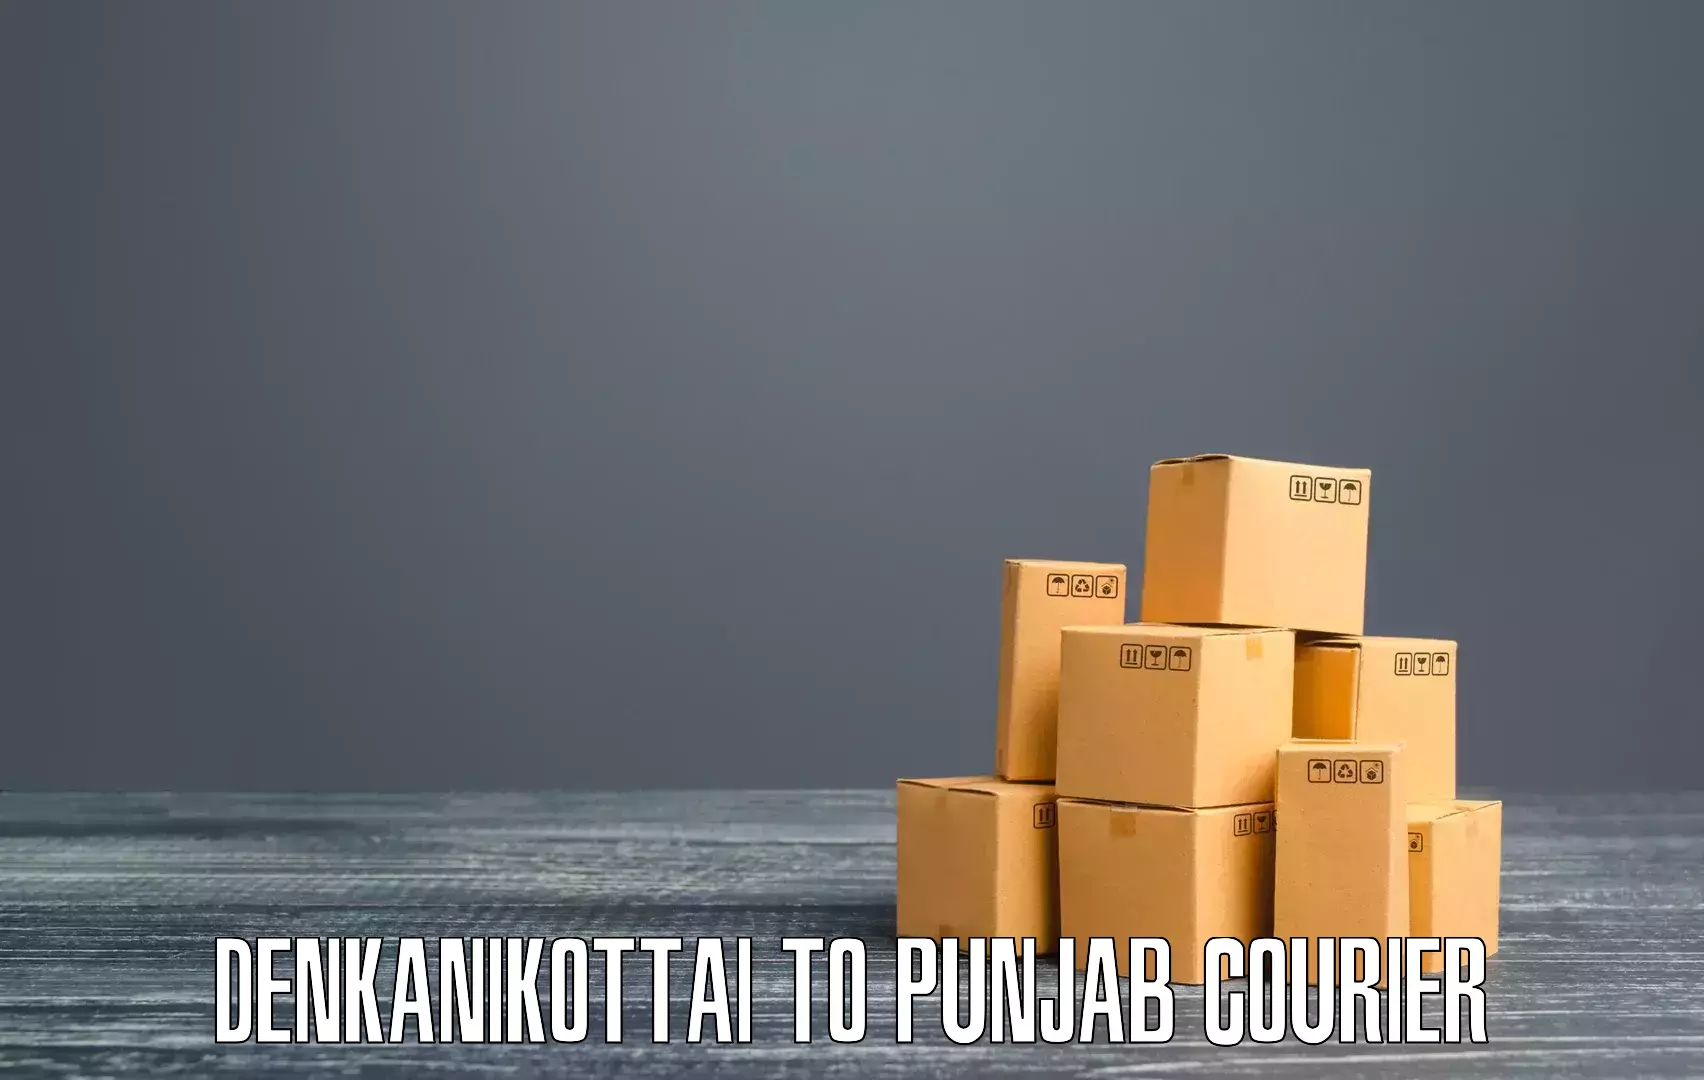 Sustainable shipping practices Denkanikottai to Phagwara